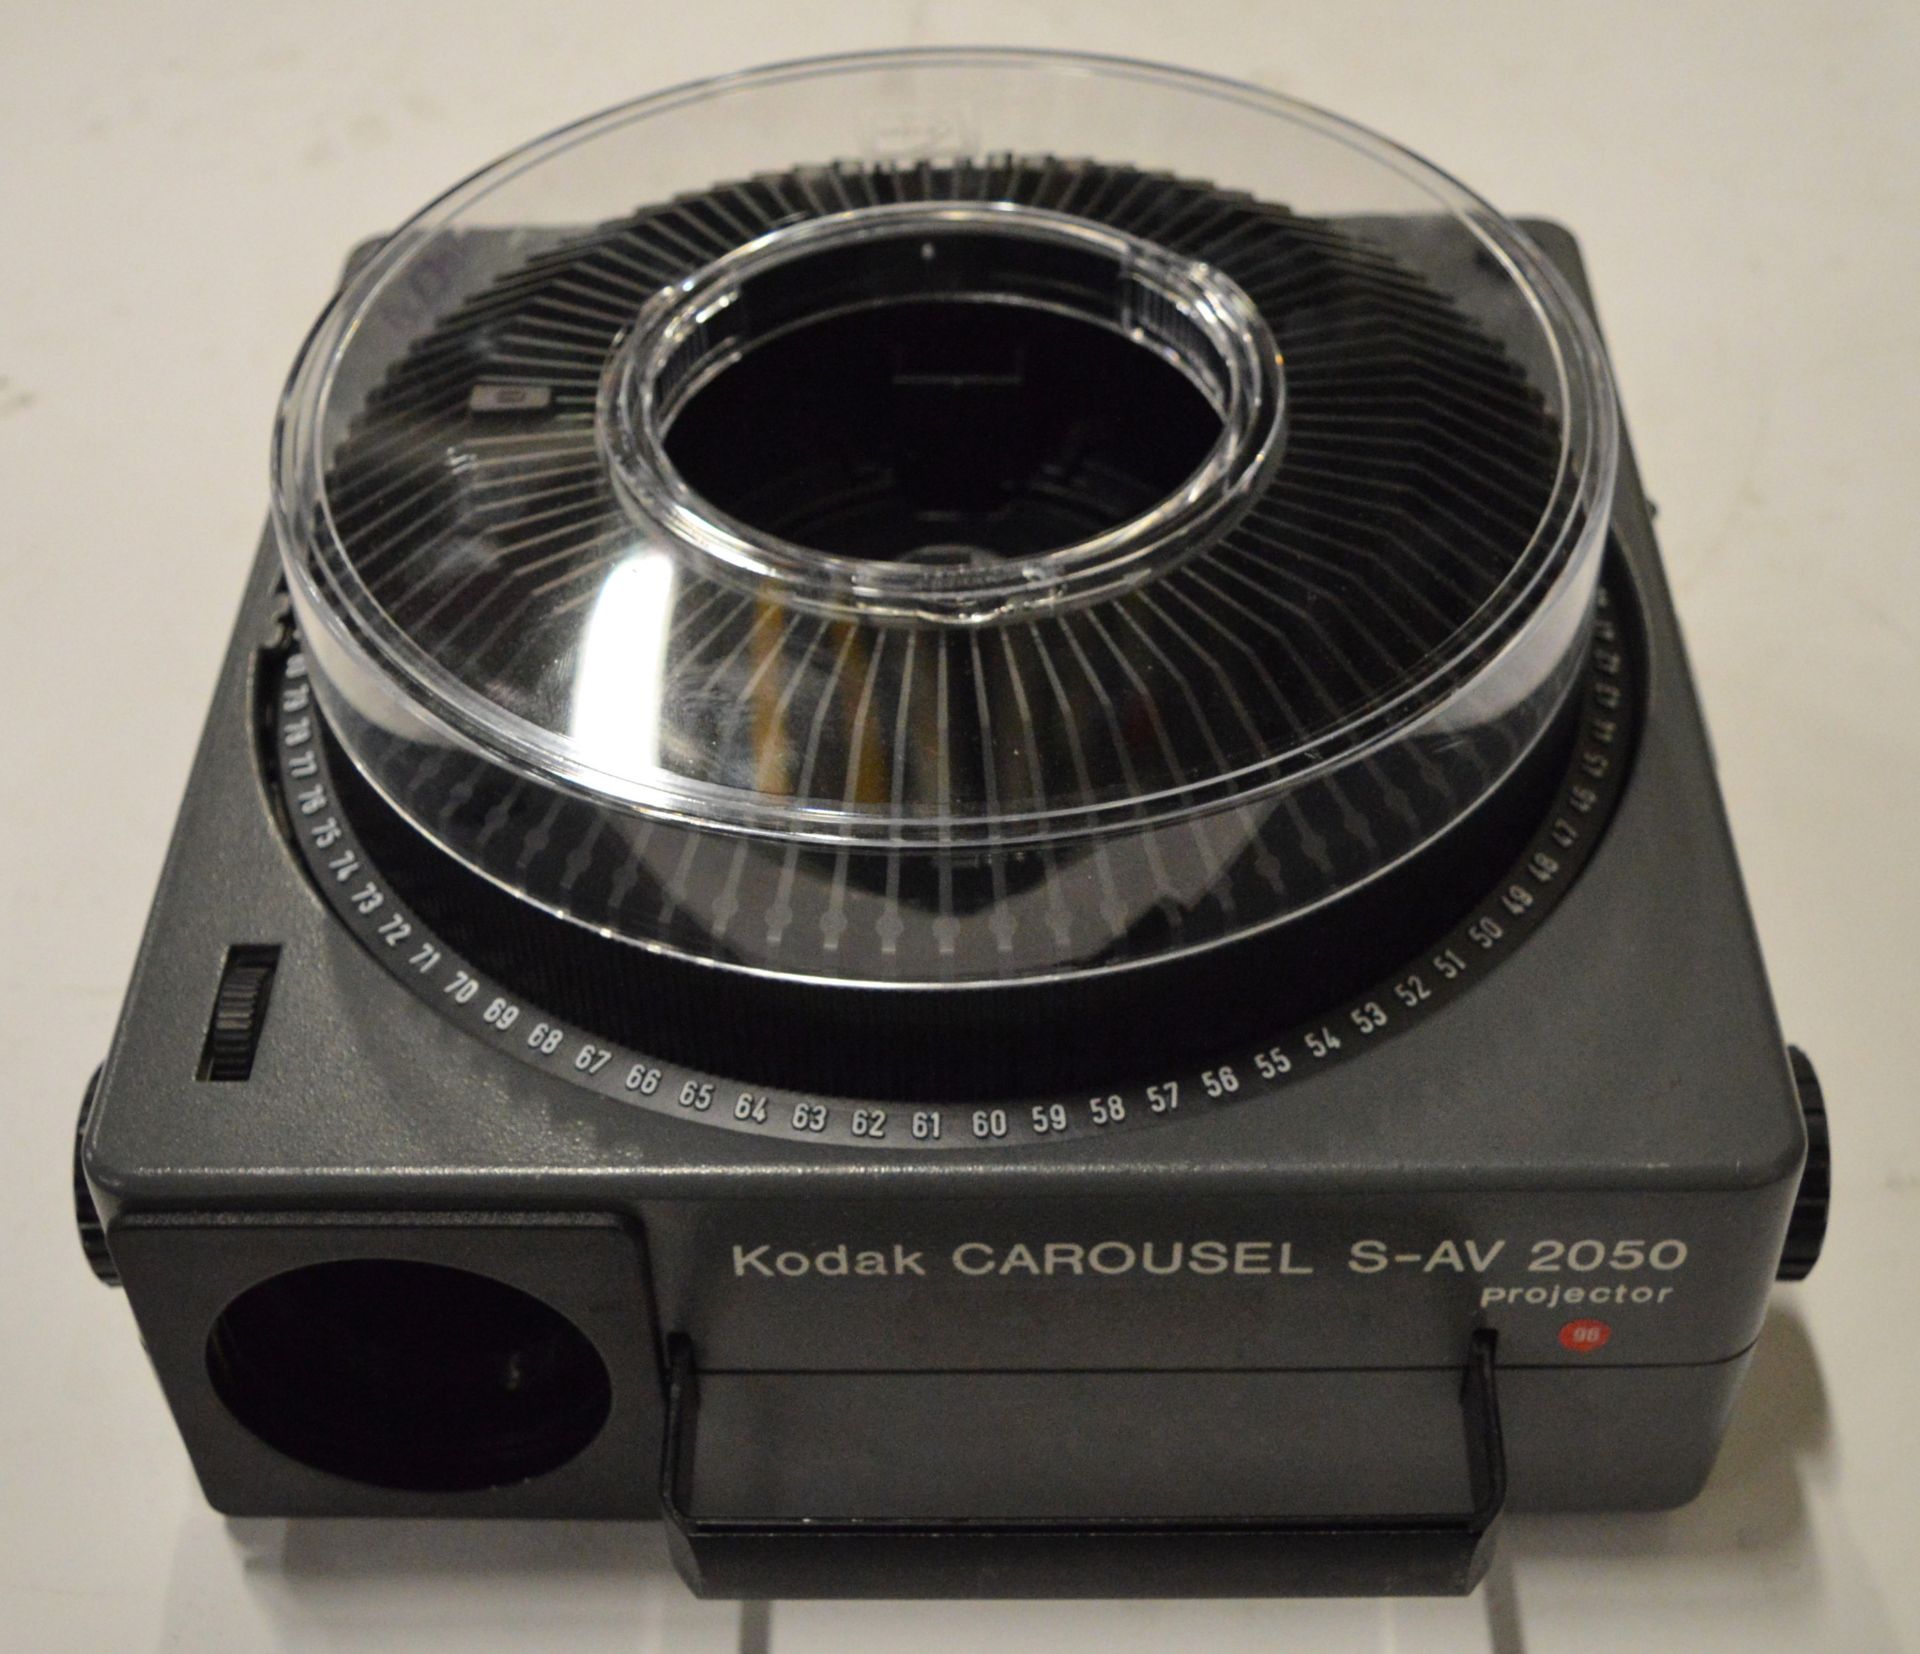 Kodak Carousel S-AV 2050 Projector. - Image 2 of 2